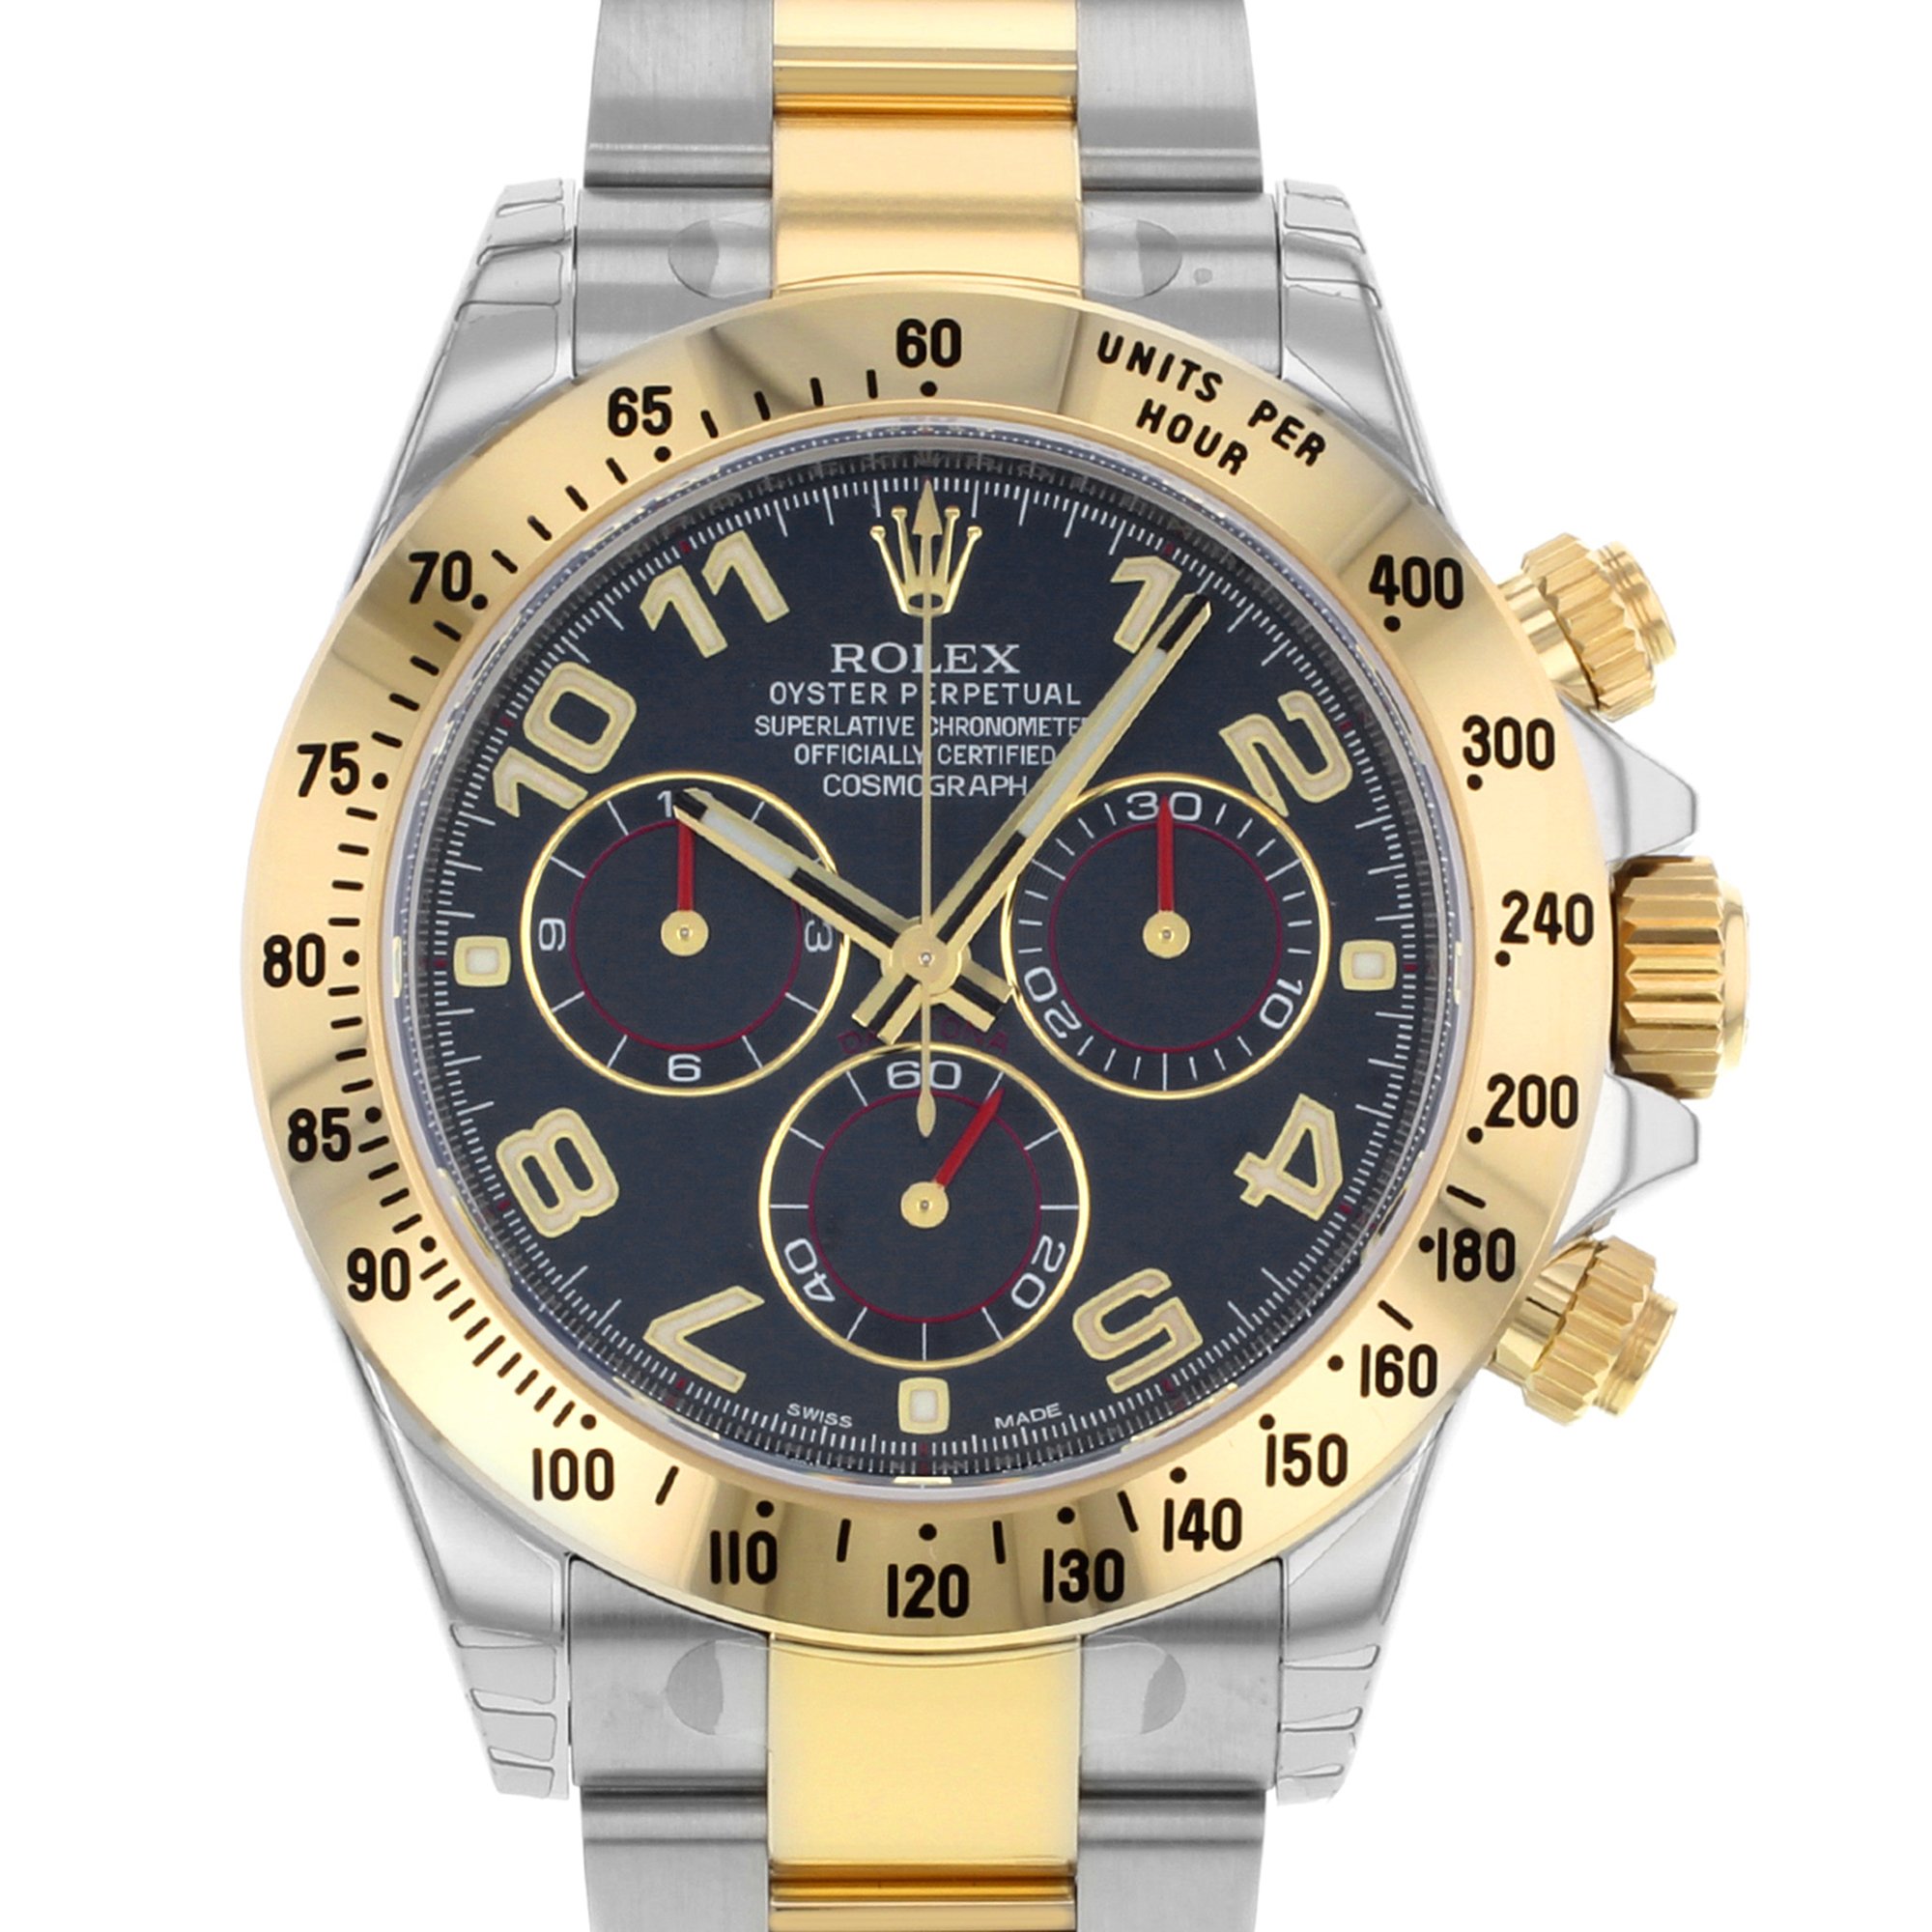 Rolex B00THF1SZ0 B00THF1SZ0 To US $14425 To UK £13983 Rolex Daytona 116523 BLA 18K Yellow Gold & Steel Automatic Men's Watch